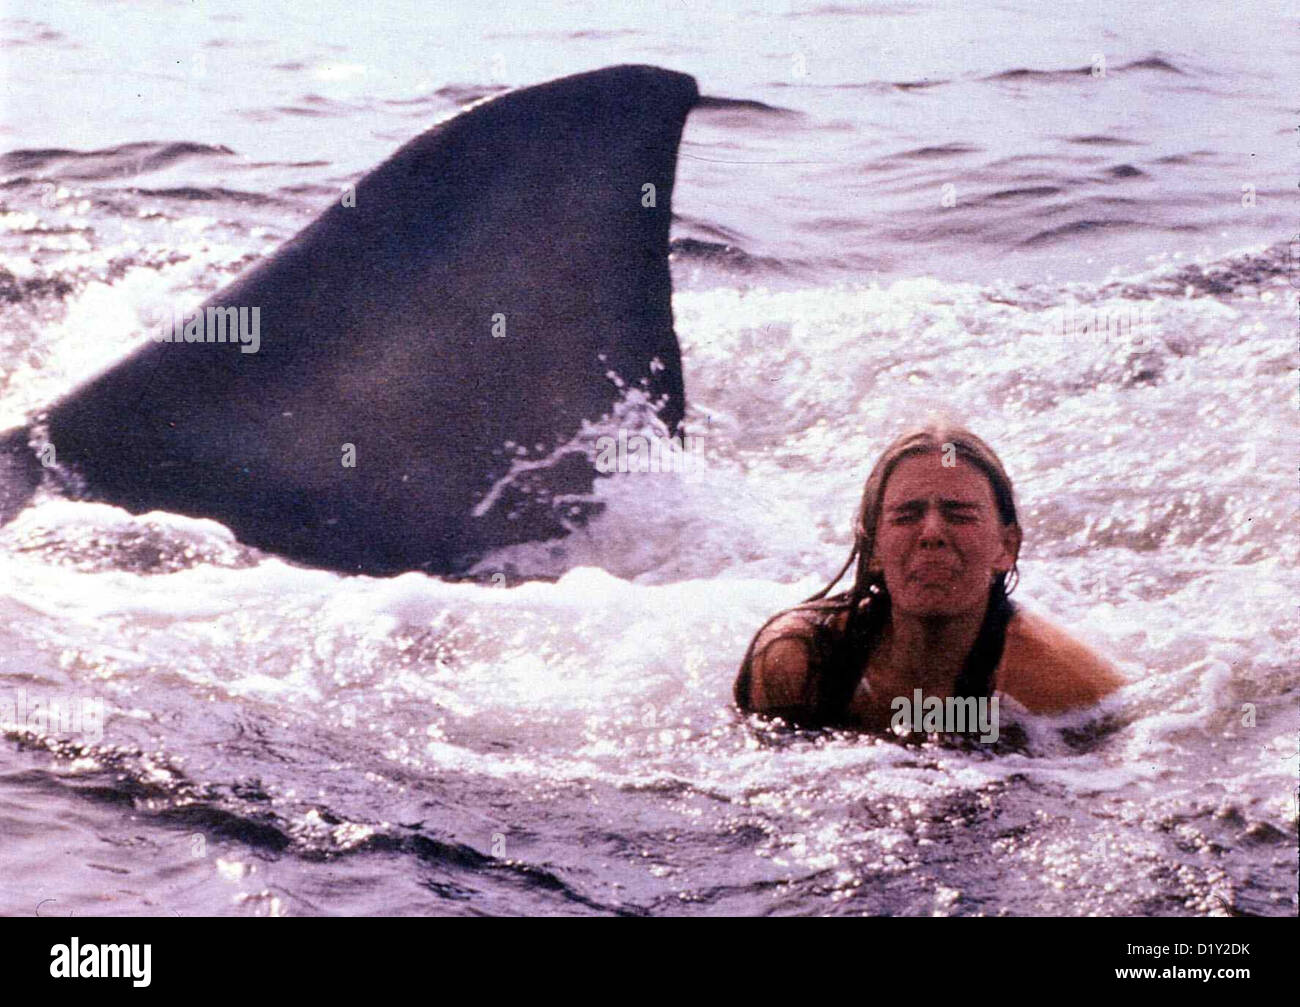 Der Weisse Hai 2  Jaws Ii  Cindy Grover Cynthia (Cindy Grover) wird von einem weiß¸en Hai attackiert. *** Local Caption *** Stock Photo